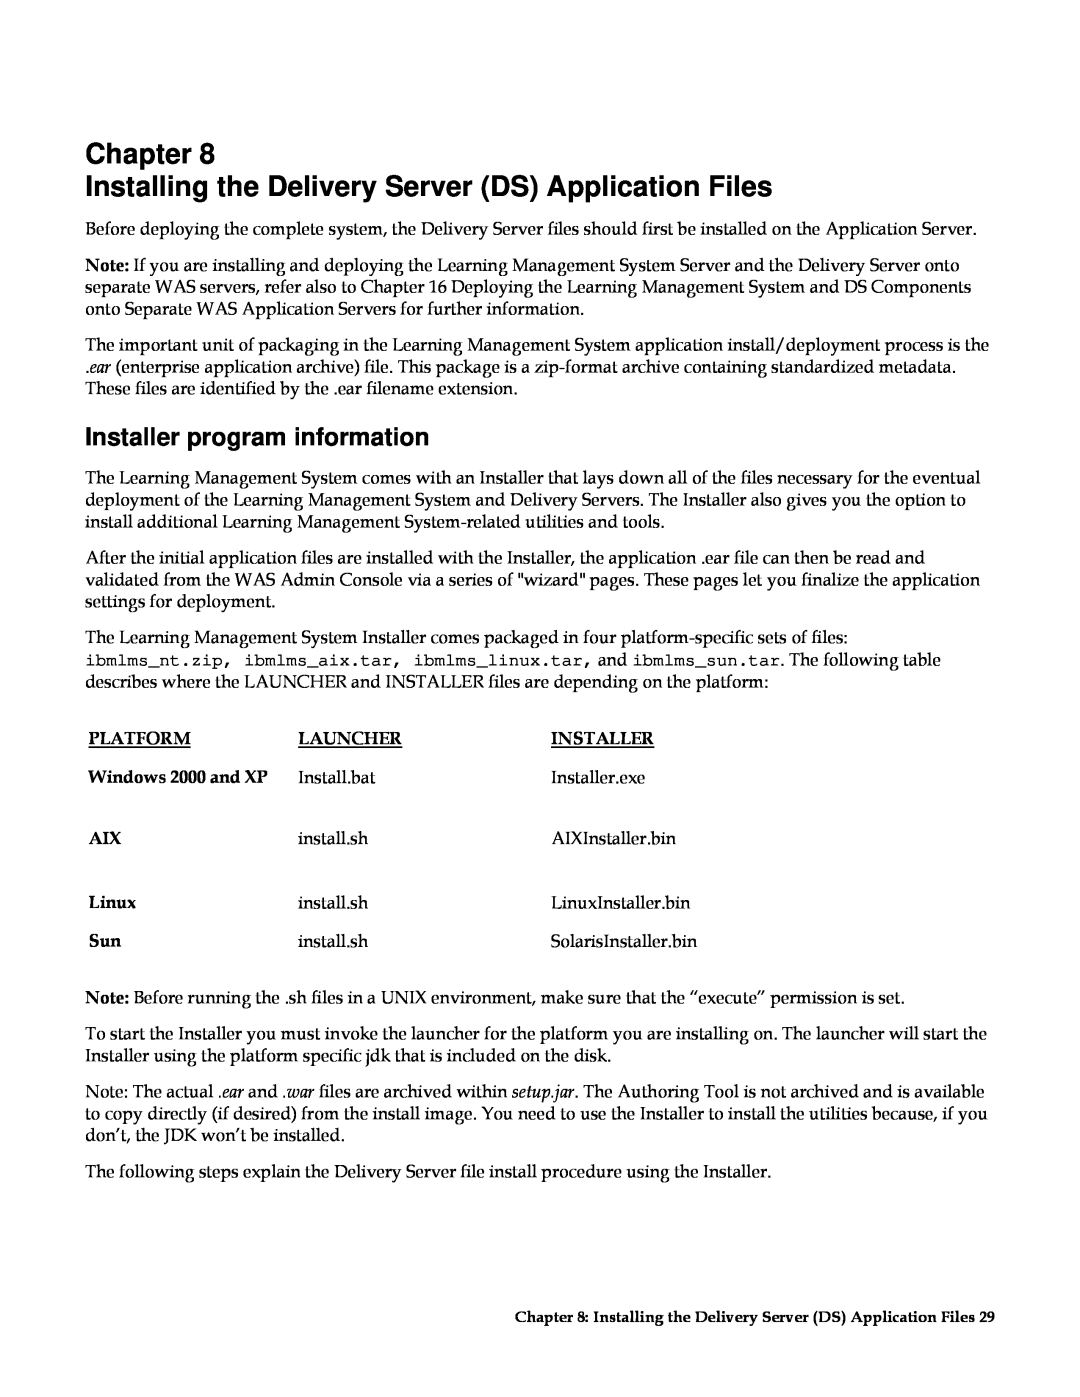 IBM G210-1784-00 Chapter Installing the Delivery Server DS Application Files, Installer program information, Platform 